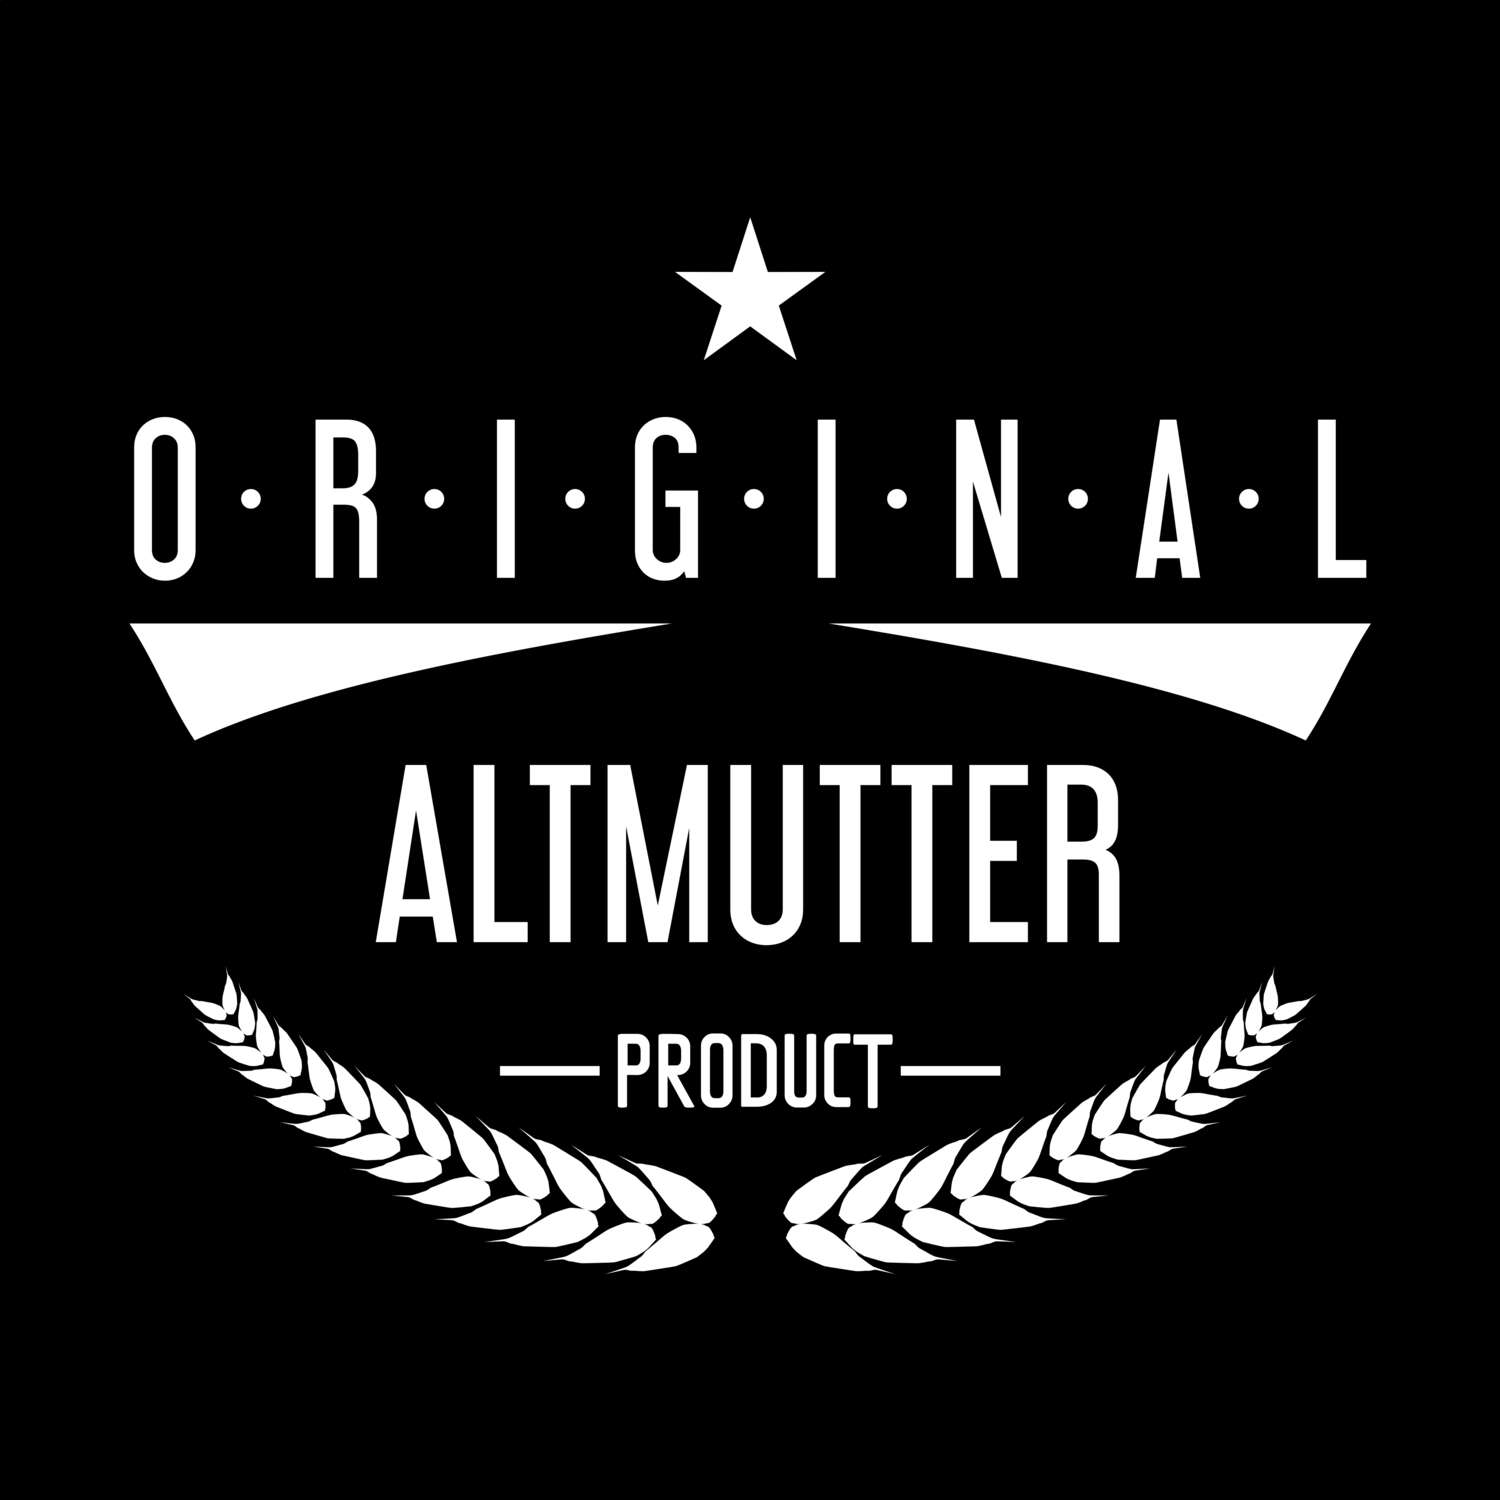 Altmutter T-Shirt »Original Product«